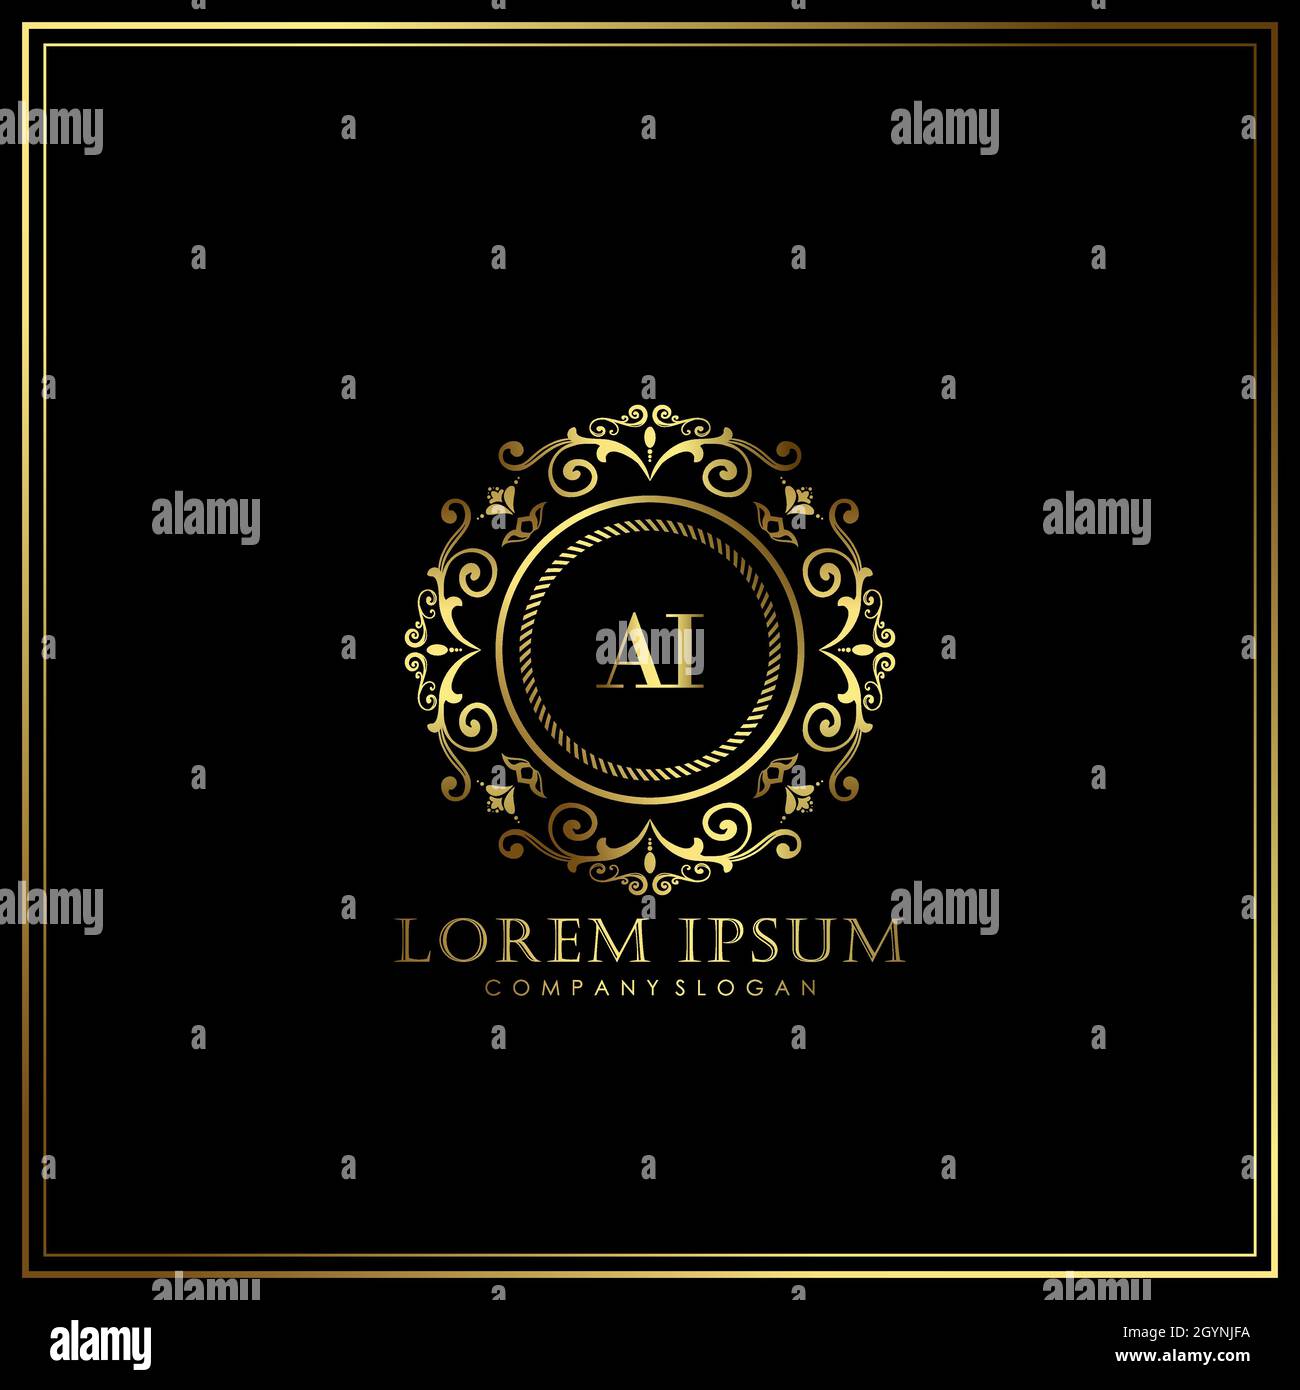 AI Initial Letter Luxury Logo Vorlage in Vektor für Restaurant, Royalty, Boutique, Café, Hotel, heraldic, Schmuck, Mode und andere Vektor illustrat Stock Vektor